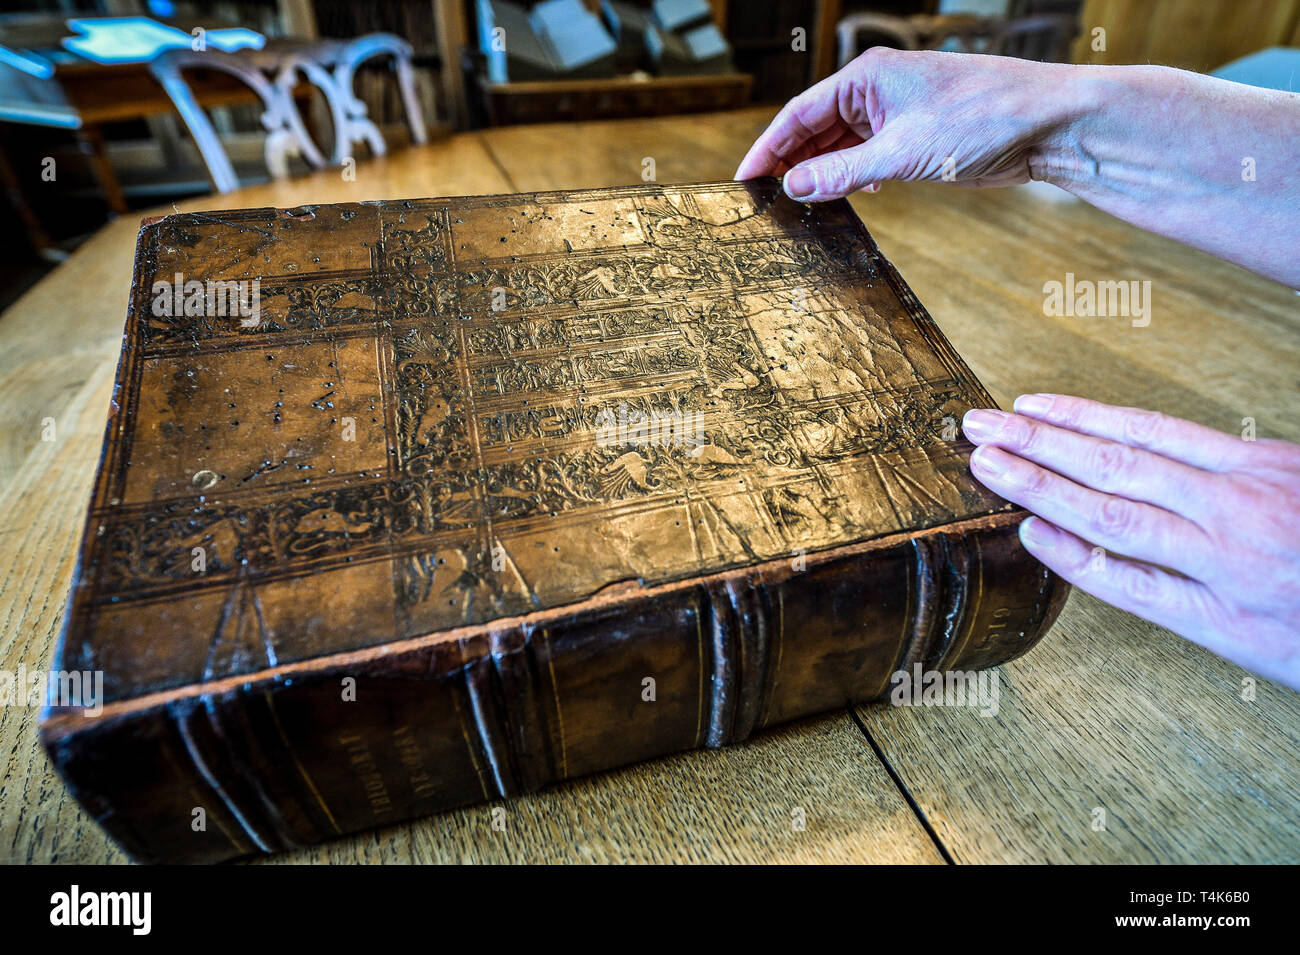 Una copia de un intrincado libro de cuero con castillos y bestias mitológicas desde 1519 en la Catedral de Salisbury la biblioteca del siglo XV, donde un proyecto en curso para catalogar, limpio y averiguar más acerca de la colección de libros raros está en marcha. Foto de stock